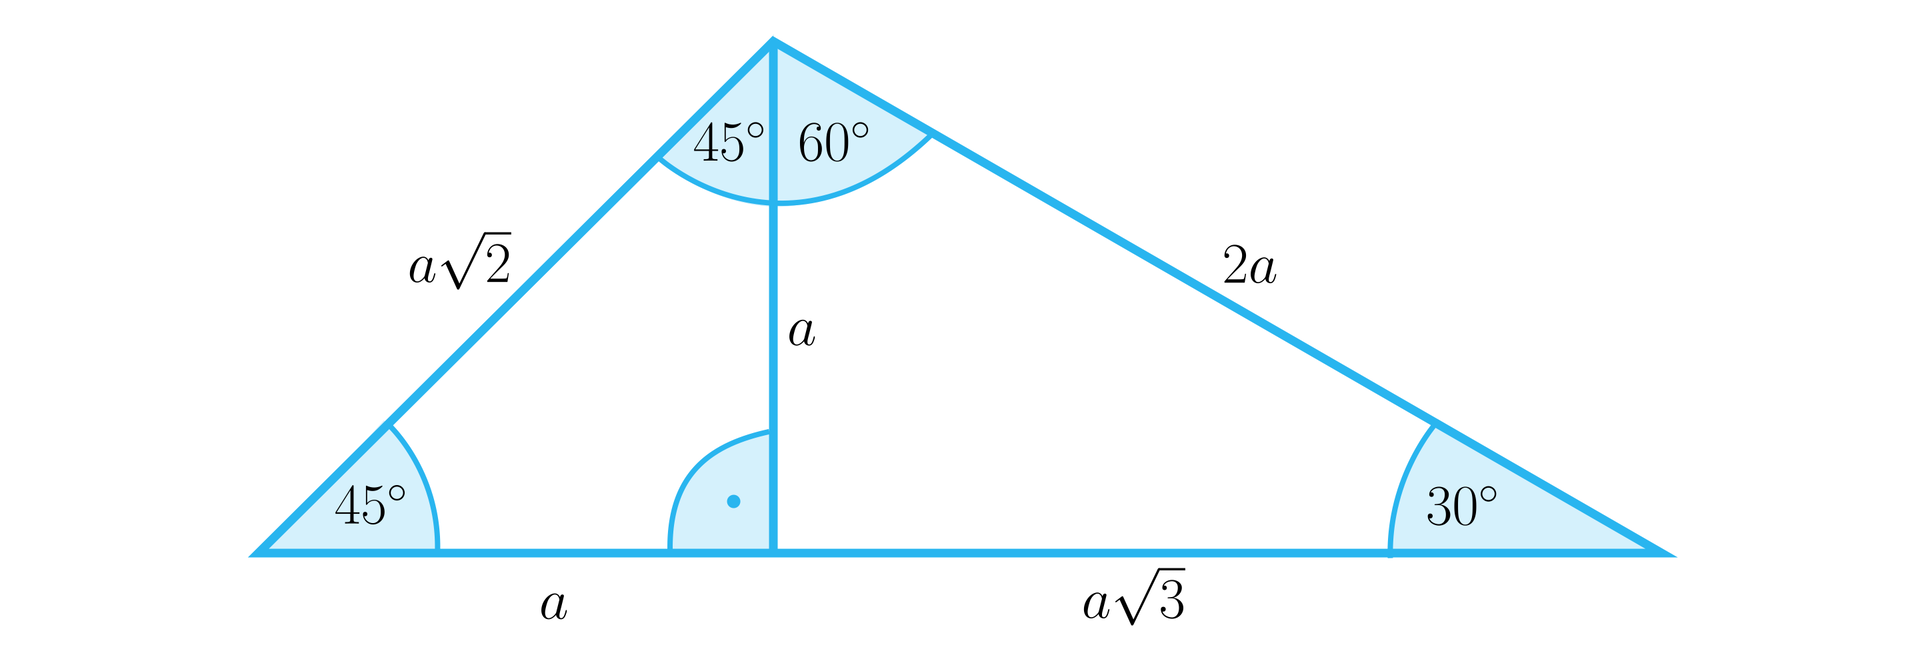 Ilustracja przedstawia trójkąt podzielony wysokością upuszczoną z górnego wierzchołka. Opiszemy cały trójkąt, a następnie osobno jego dwa trójkąty składowe. Duży trójkąt składa się z lewego boku o długości a2, prawego ramienia o długości 2a oraz podstawy o długości a+a3. Wysokość dużego trójkąta upuszczona na podstawę wynosi a. Kąty wewnętrzen tego trójkąta to: między ramionami a2 i 2a kąt o mierze 105 stopni, między ramieniem a2 a podstawą kąt wynosi 45 stopni oraz między bokiem 2a a podstawą kąt wynosi 30 stopni. Lewy trójkąt jest trójkątem prostokątnym i ma następujące boki: pionowy a, podstawę a i przeciwprostokątną a2. Między przyprostokątnymi a przeciwprostokątnymi zaznaczono kąty 45 stopni oraz kąt prosty między przyprostokątnymi. Składowy trójkąt po prawo również jest trójkątem prostokątnym. Pionowa przyprostokątna to bok a, podstawa trójkąta ma długość a3, a przeciwprostokątna ma długość 2a. Kąty wewnętrzne w tym trójkącie to: przy górnym wierzchołku, czyli między bokami a i 2a kąt ma miarę 60 stopni, między bokiem a i podstawą znajduje się kąt prosty, natomiast między podstawą a bokiem 2a znajduje się kąt 30 stopni.